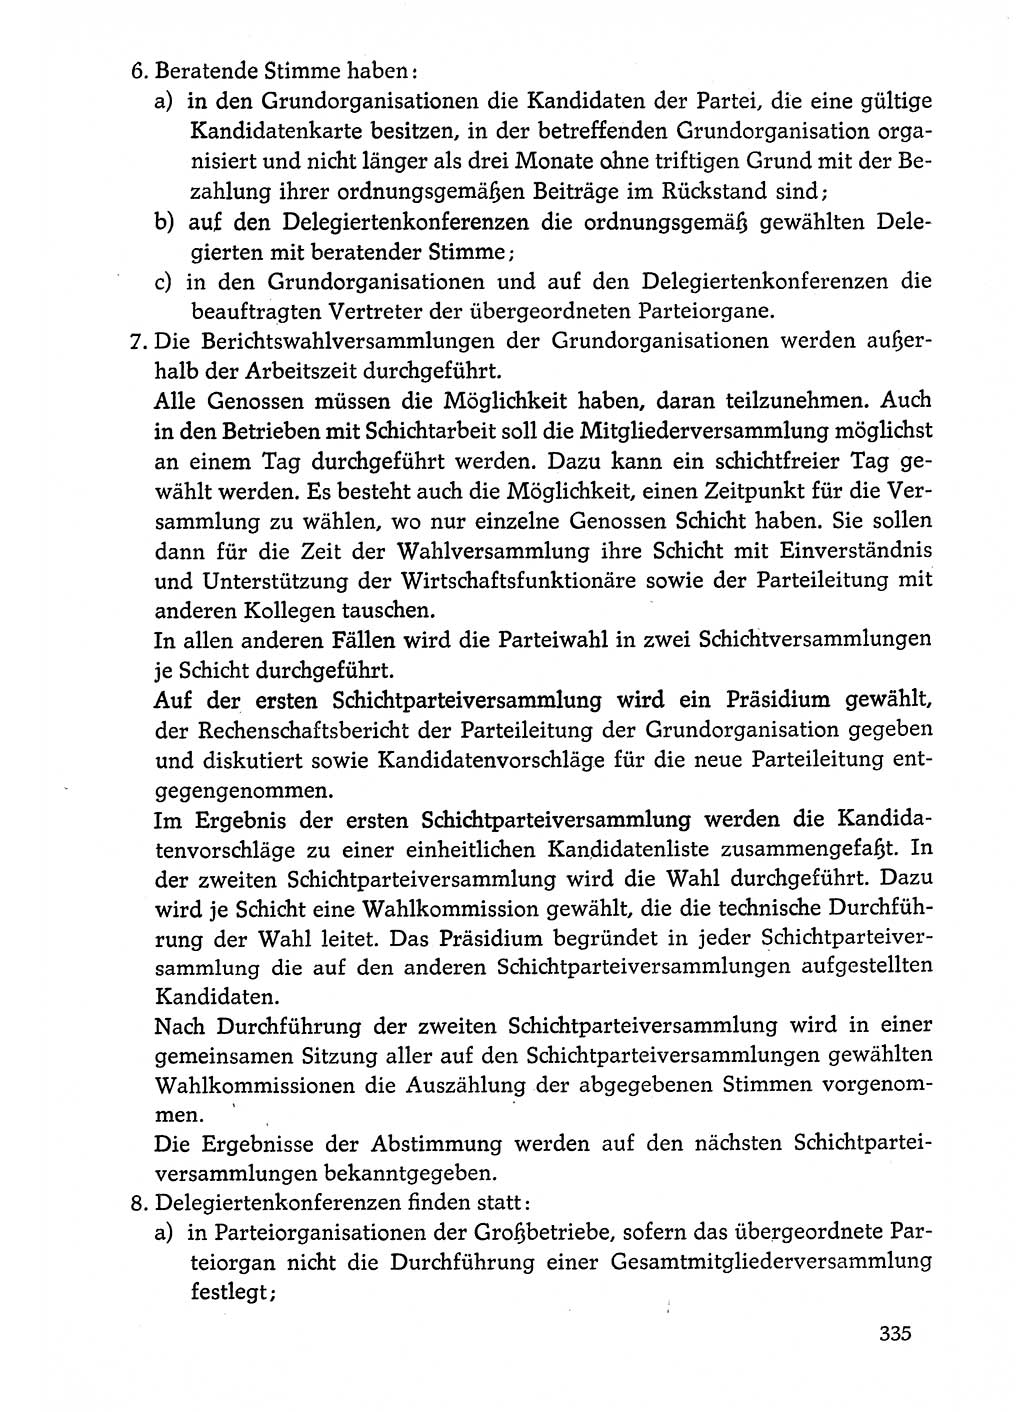 Dokumente der Sozialistischen Einheitspartei Deutschlands (SED) [Deutsche Demokratische Republik (DDR)] 1974-1975, Seite 335 (Dok. SED DDR 1978, Bd. ⅩⅤ, S. 335)